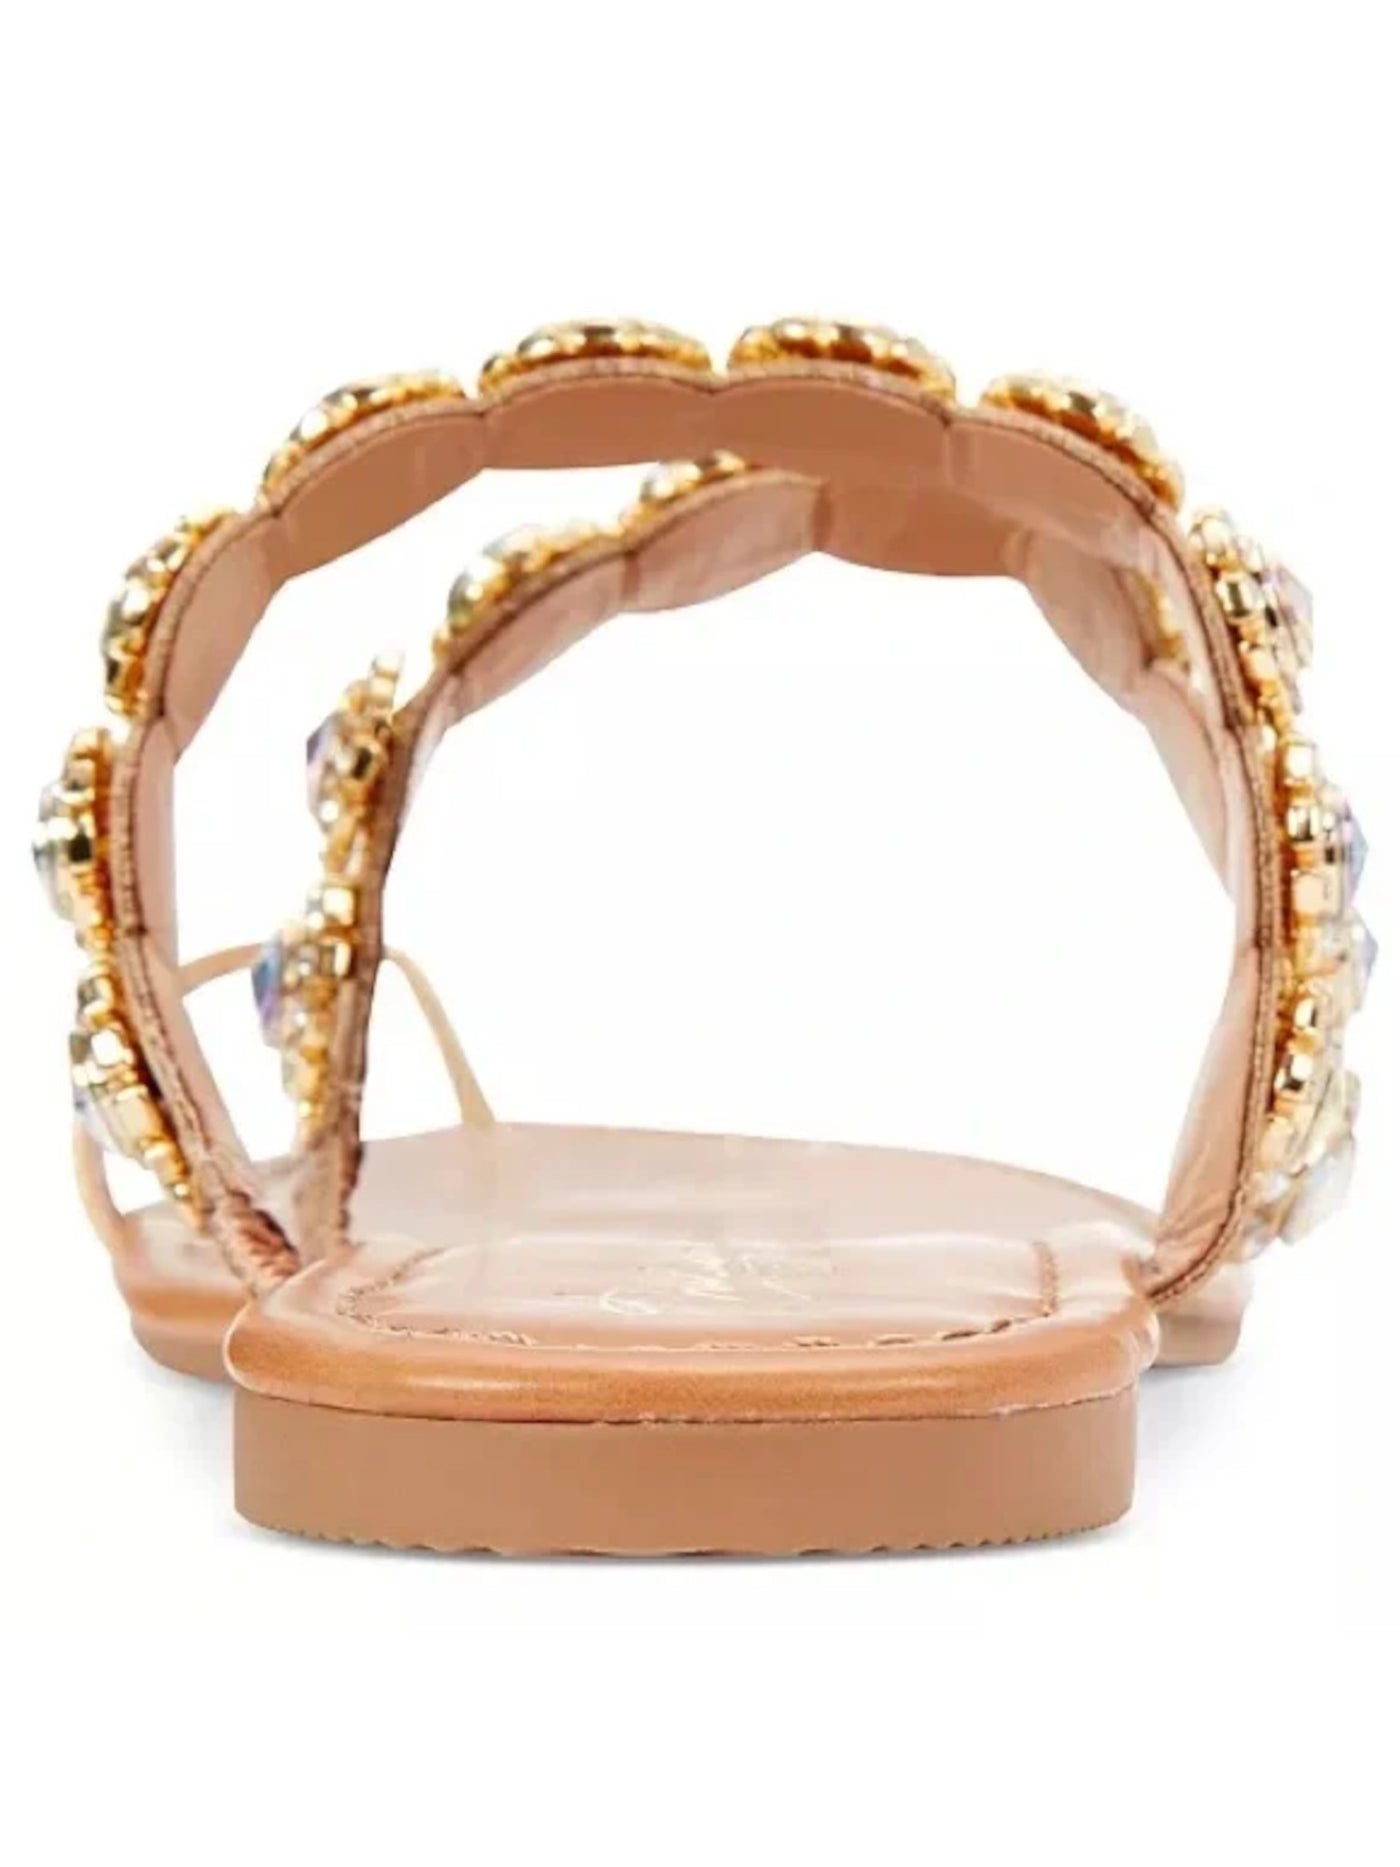 THALIA SODI Womens Gold Mixed Media Toe Ring Rhinestone Embellished Joya Round Toe Slip On Sandals Shoes 7 M